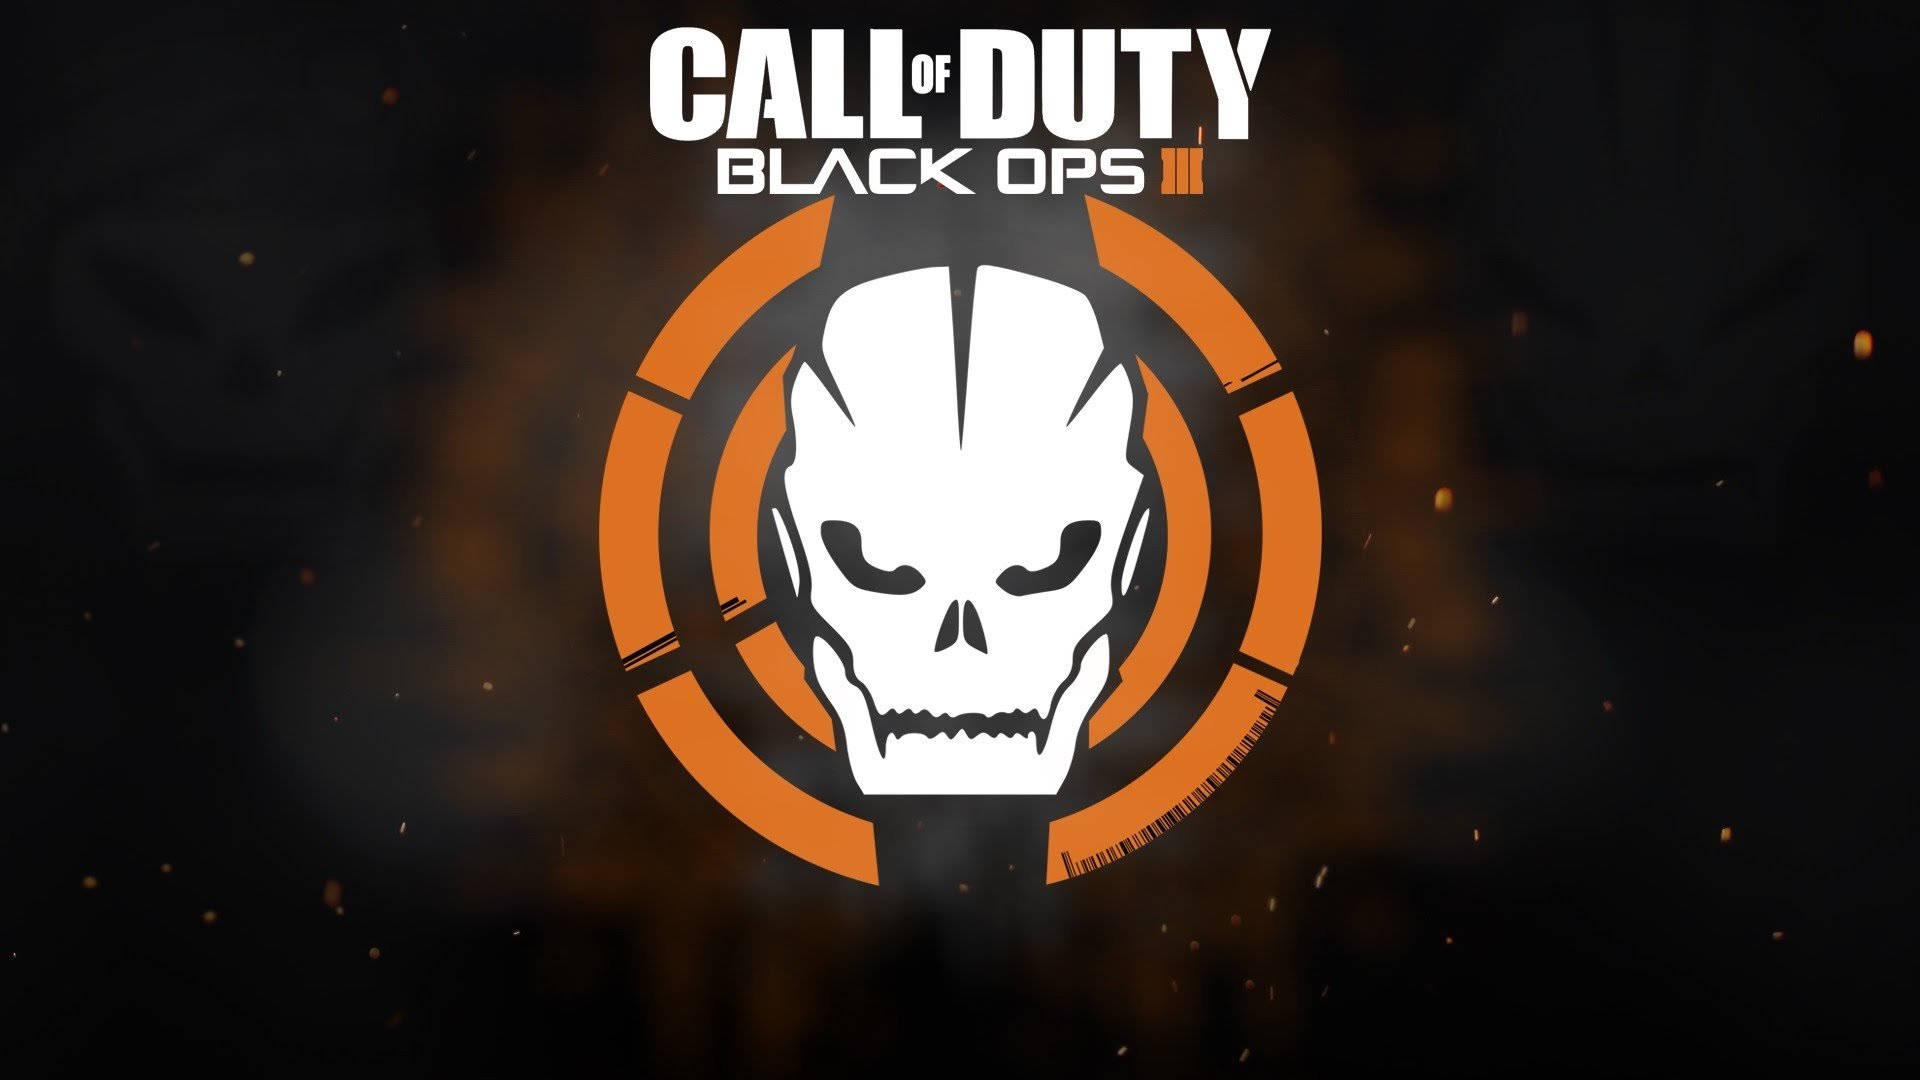 Assumauma Posição Com Call Of Duty Black Ops 3 Na Tela Do Seu Computador Ou Celular. Papel de Parede